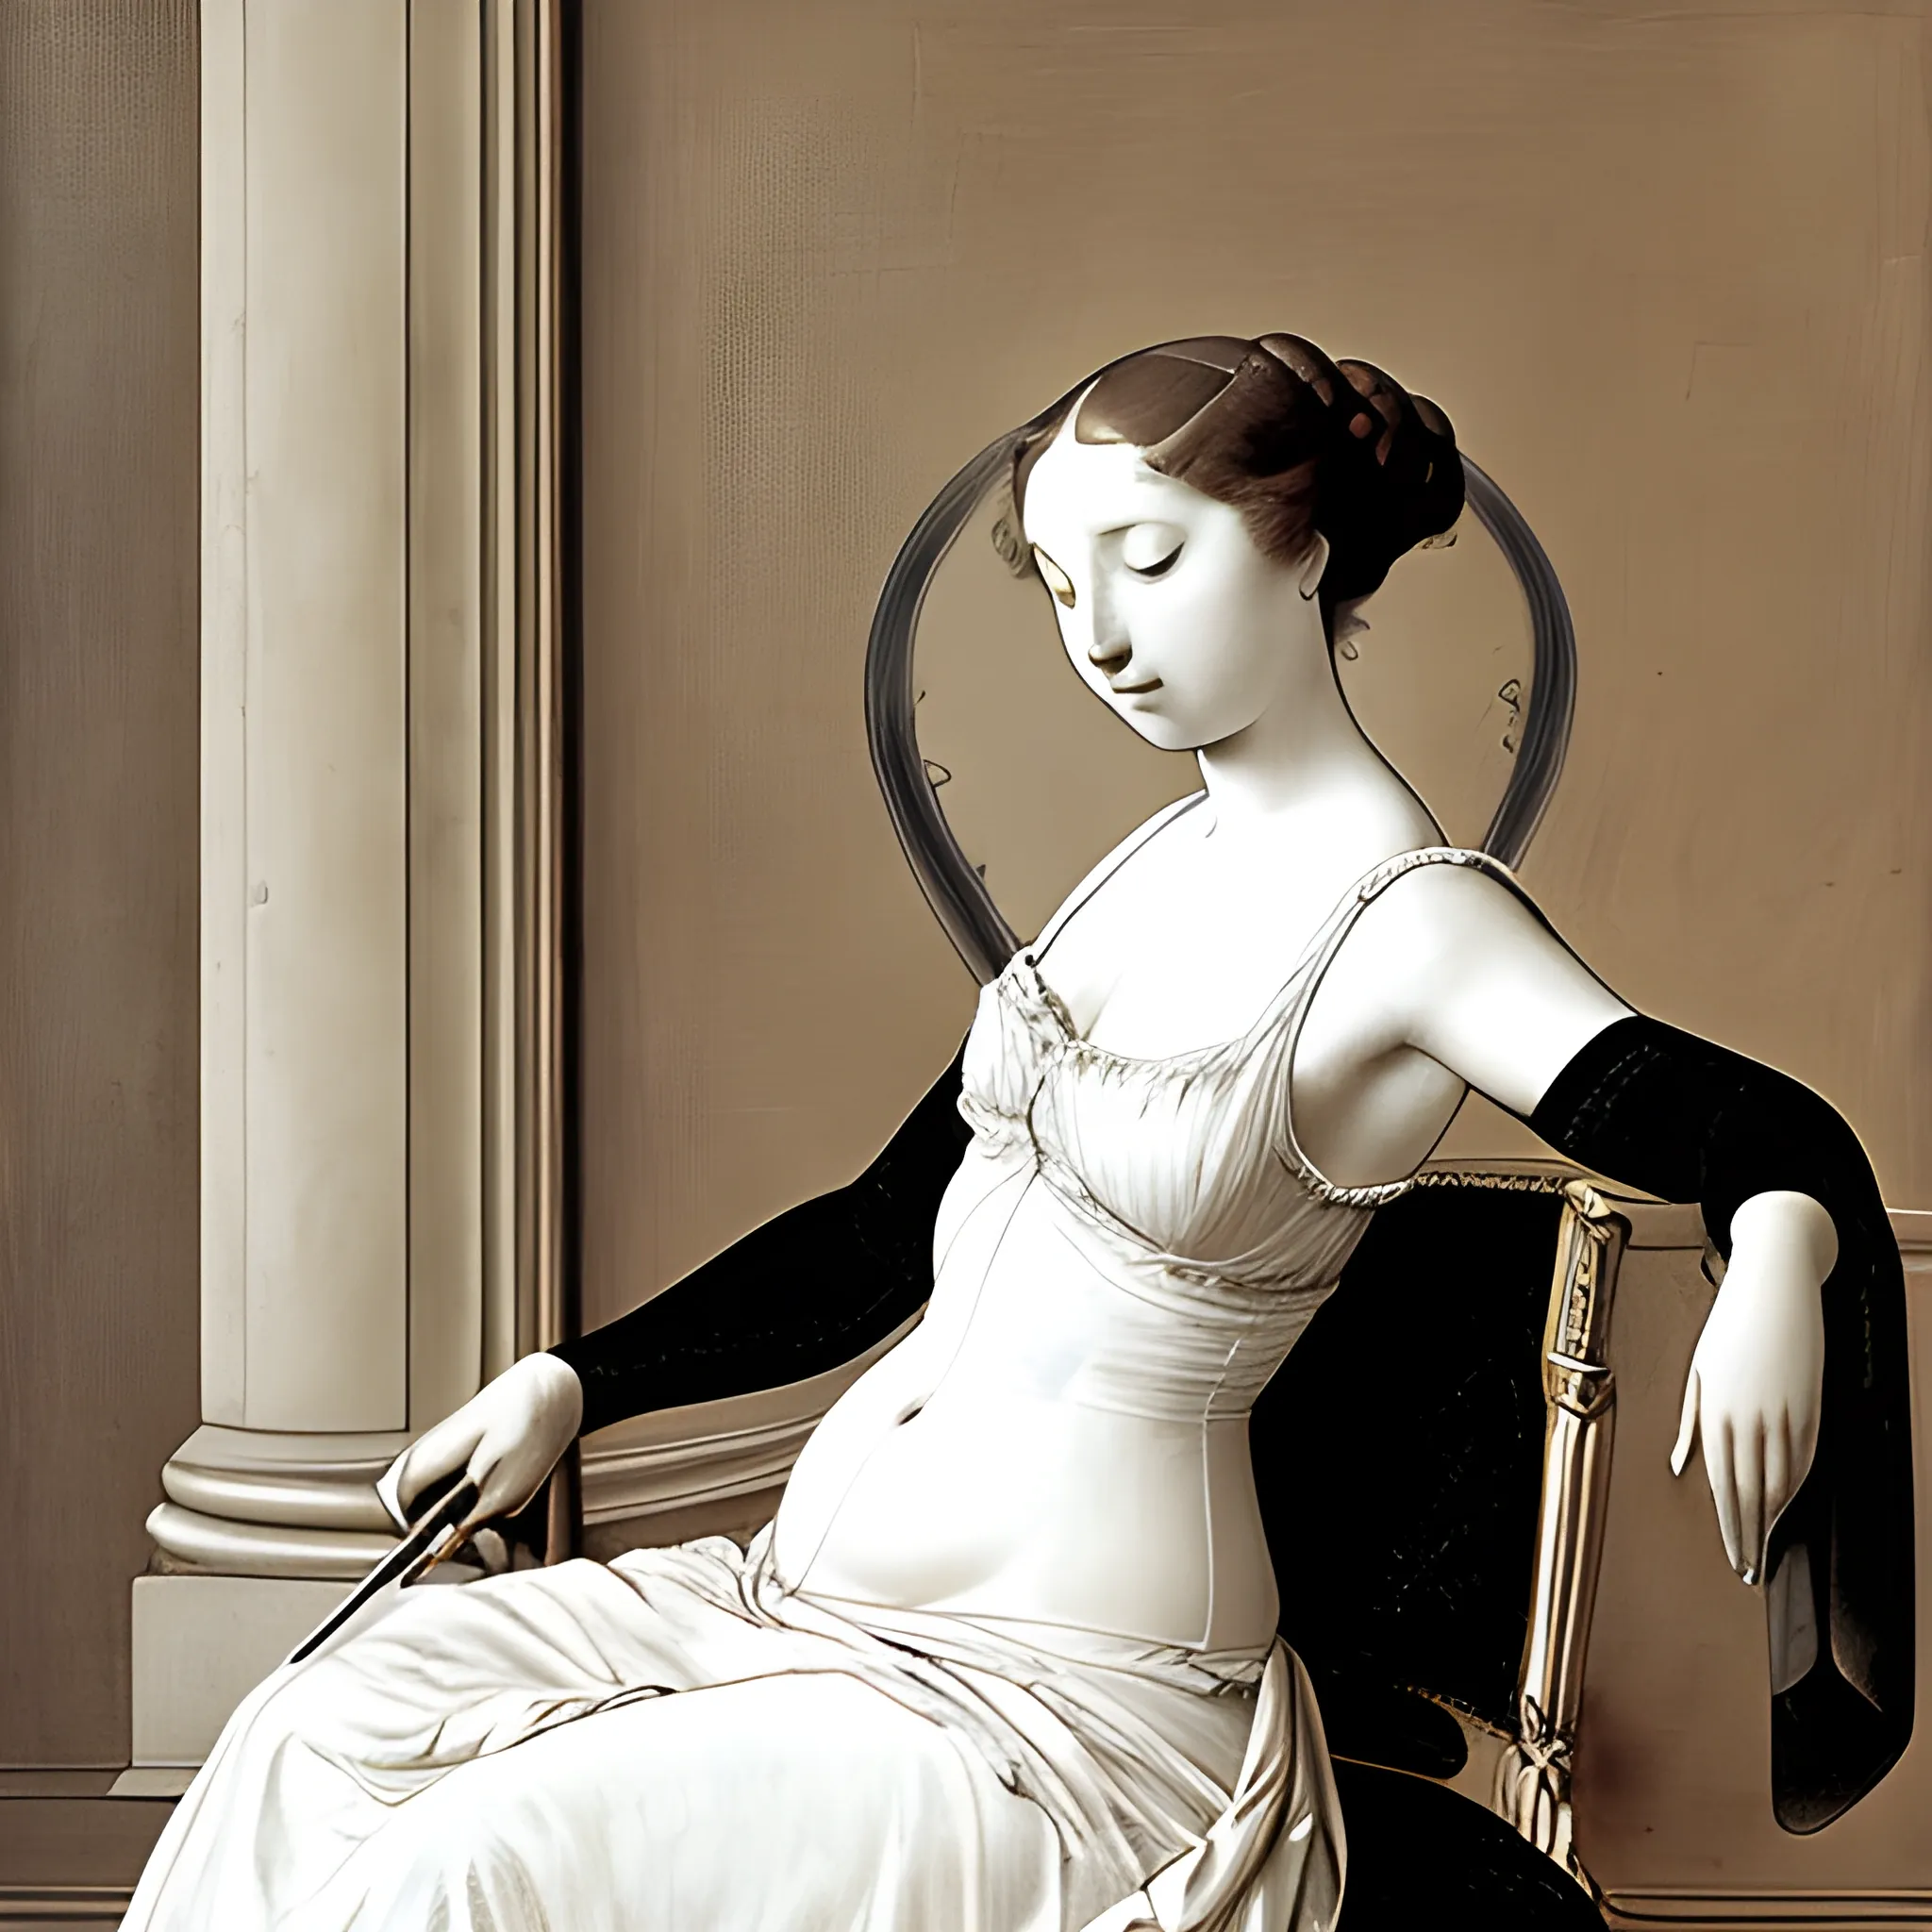 Le Violon d’Ingres sur le dos d'une femme assise, couleur, noir et blanc